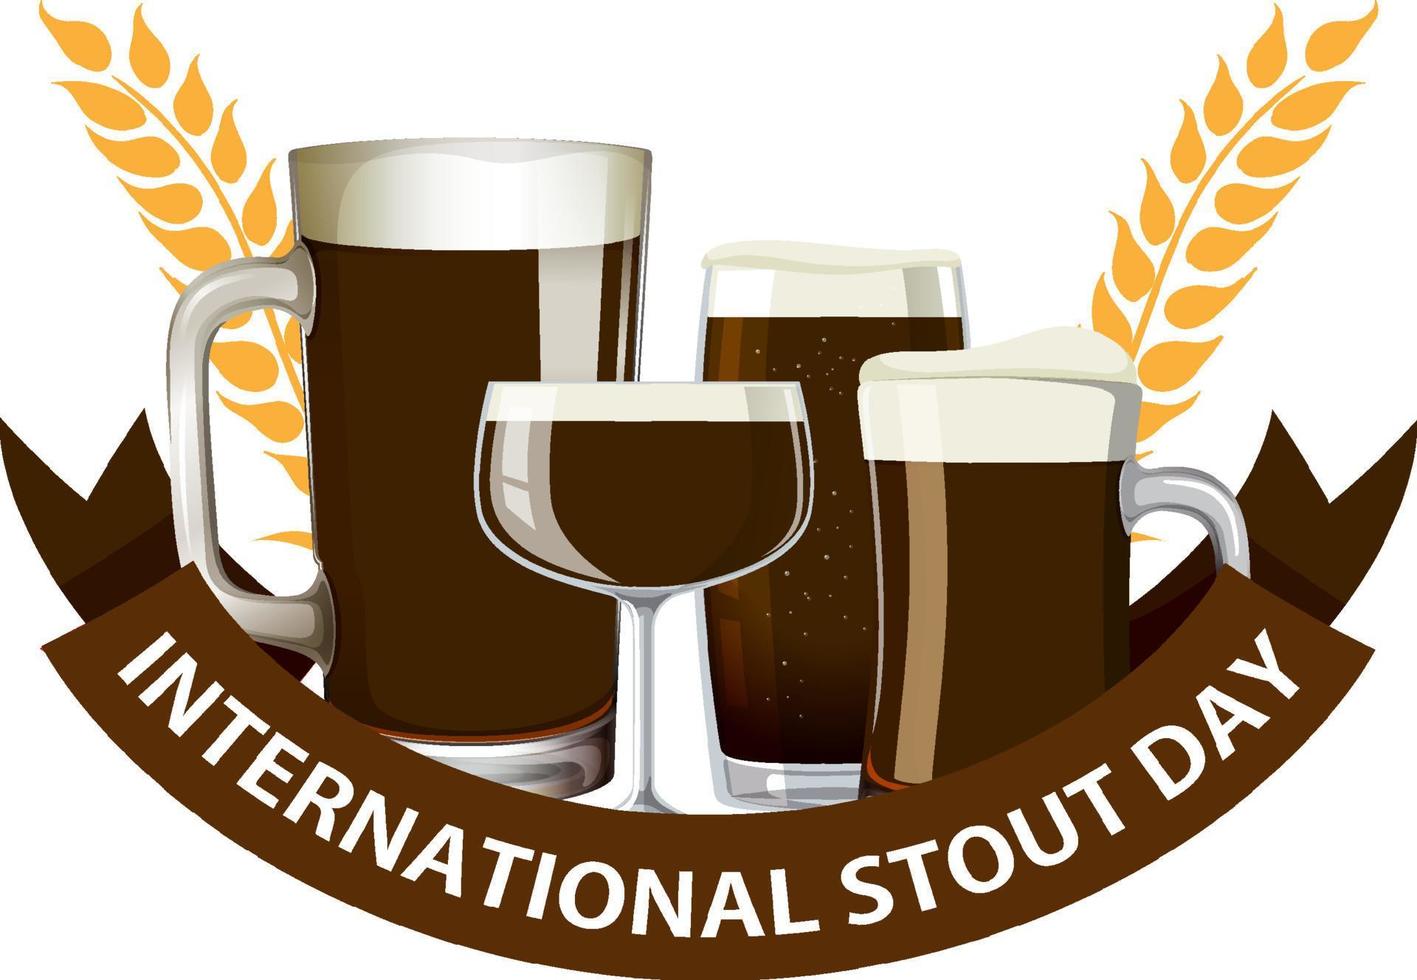 diseño del cartel del día internacional de la cerveza fuerte vector